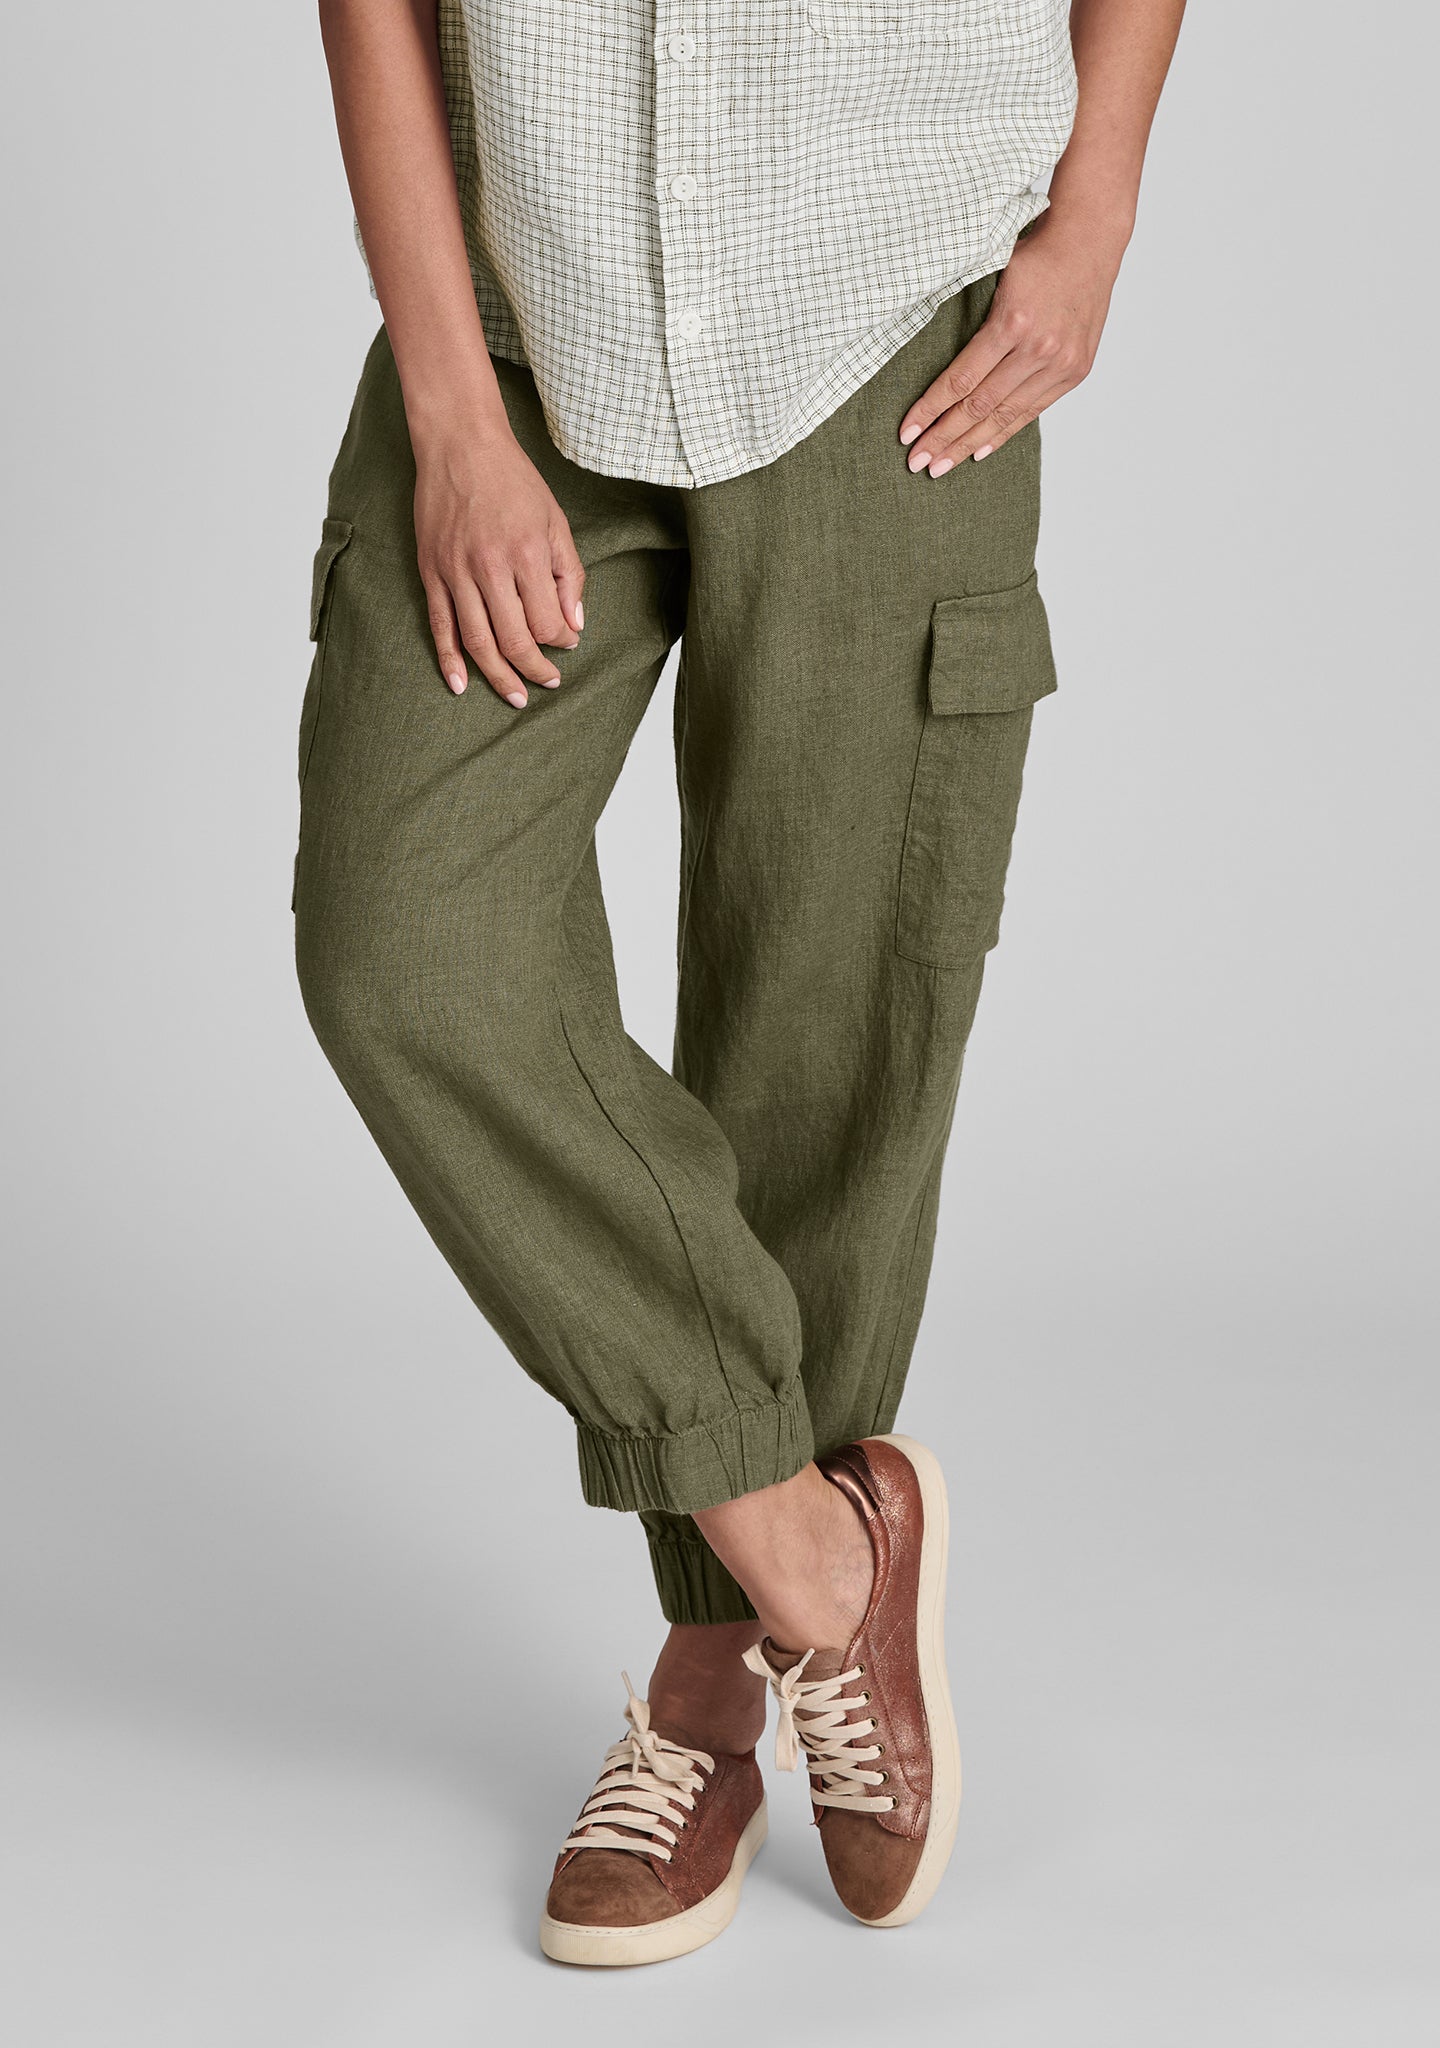 nifty pant linen drawstring pants green